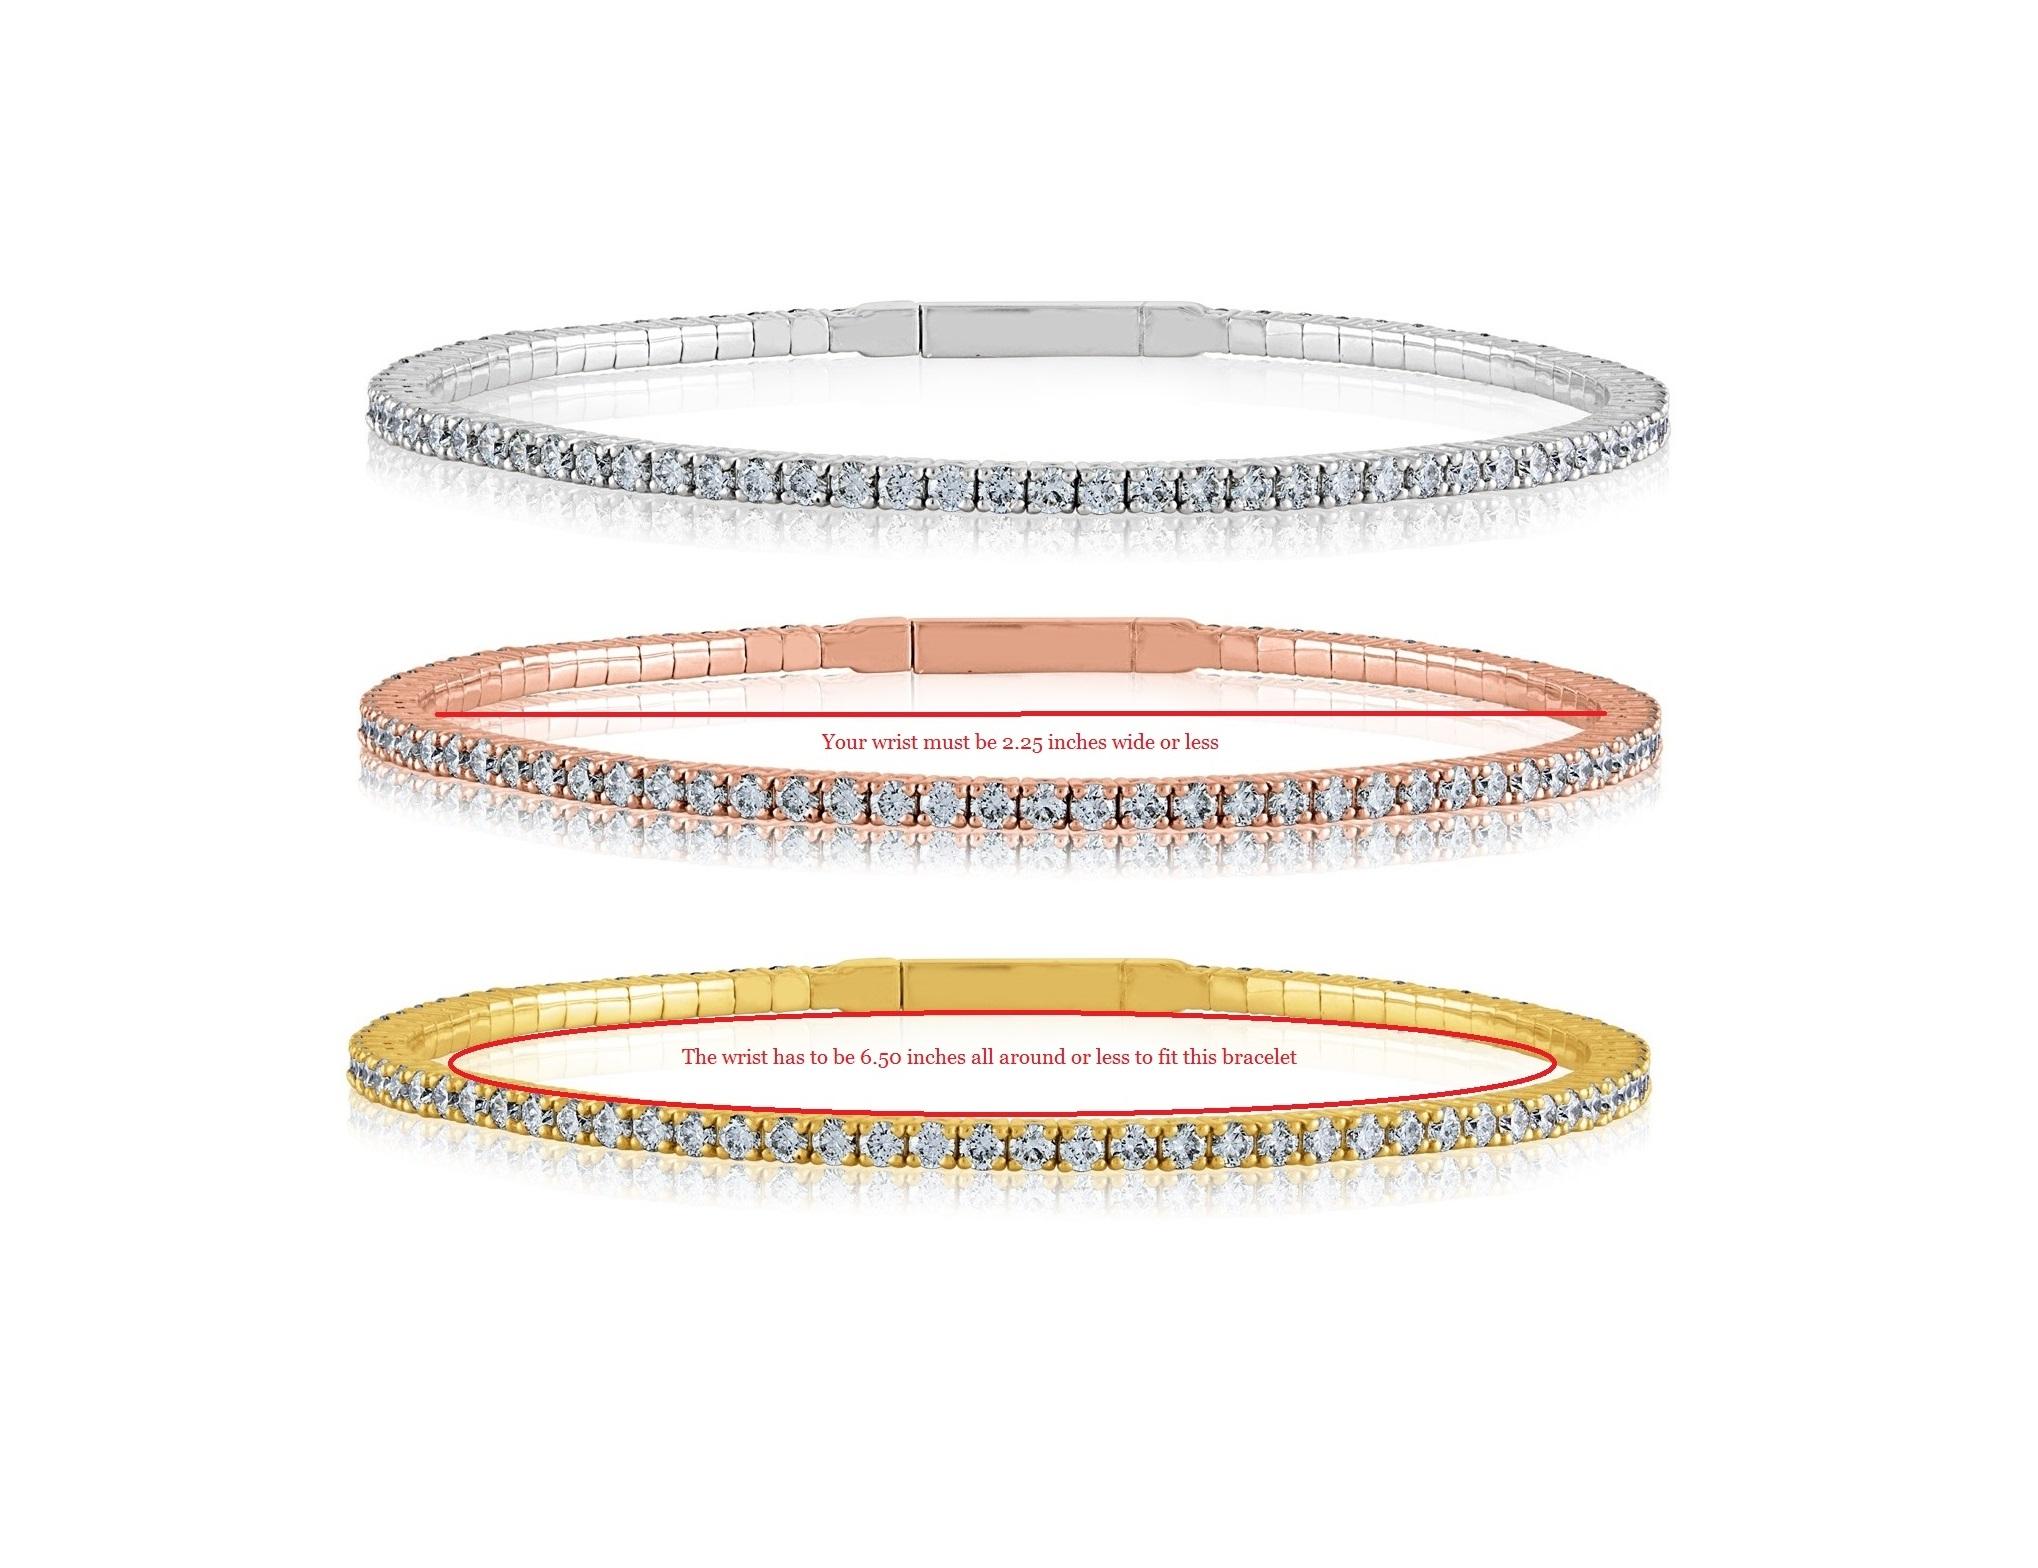 Rundum-Diamant-Armspange Gold Tension Bracelet
Das Armband ist flexibel und biegsam.
Das Armband ist 14K Rose Gold oder Gelbgold oder Weißgold
Es gibt 2,30 Karat in Diamanten F/G VS/SI
Passt für Handgelenke bis zu 6,50 Zoll.
Das Armband wiegt 8.3